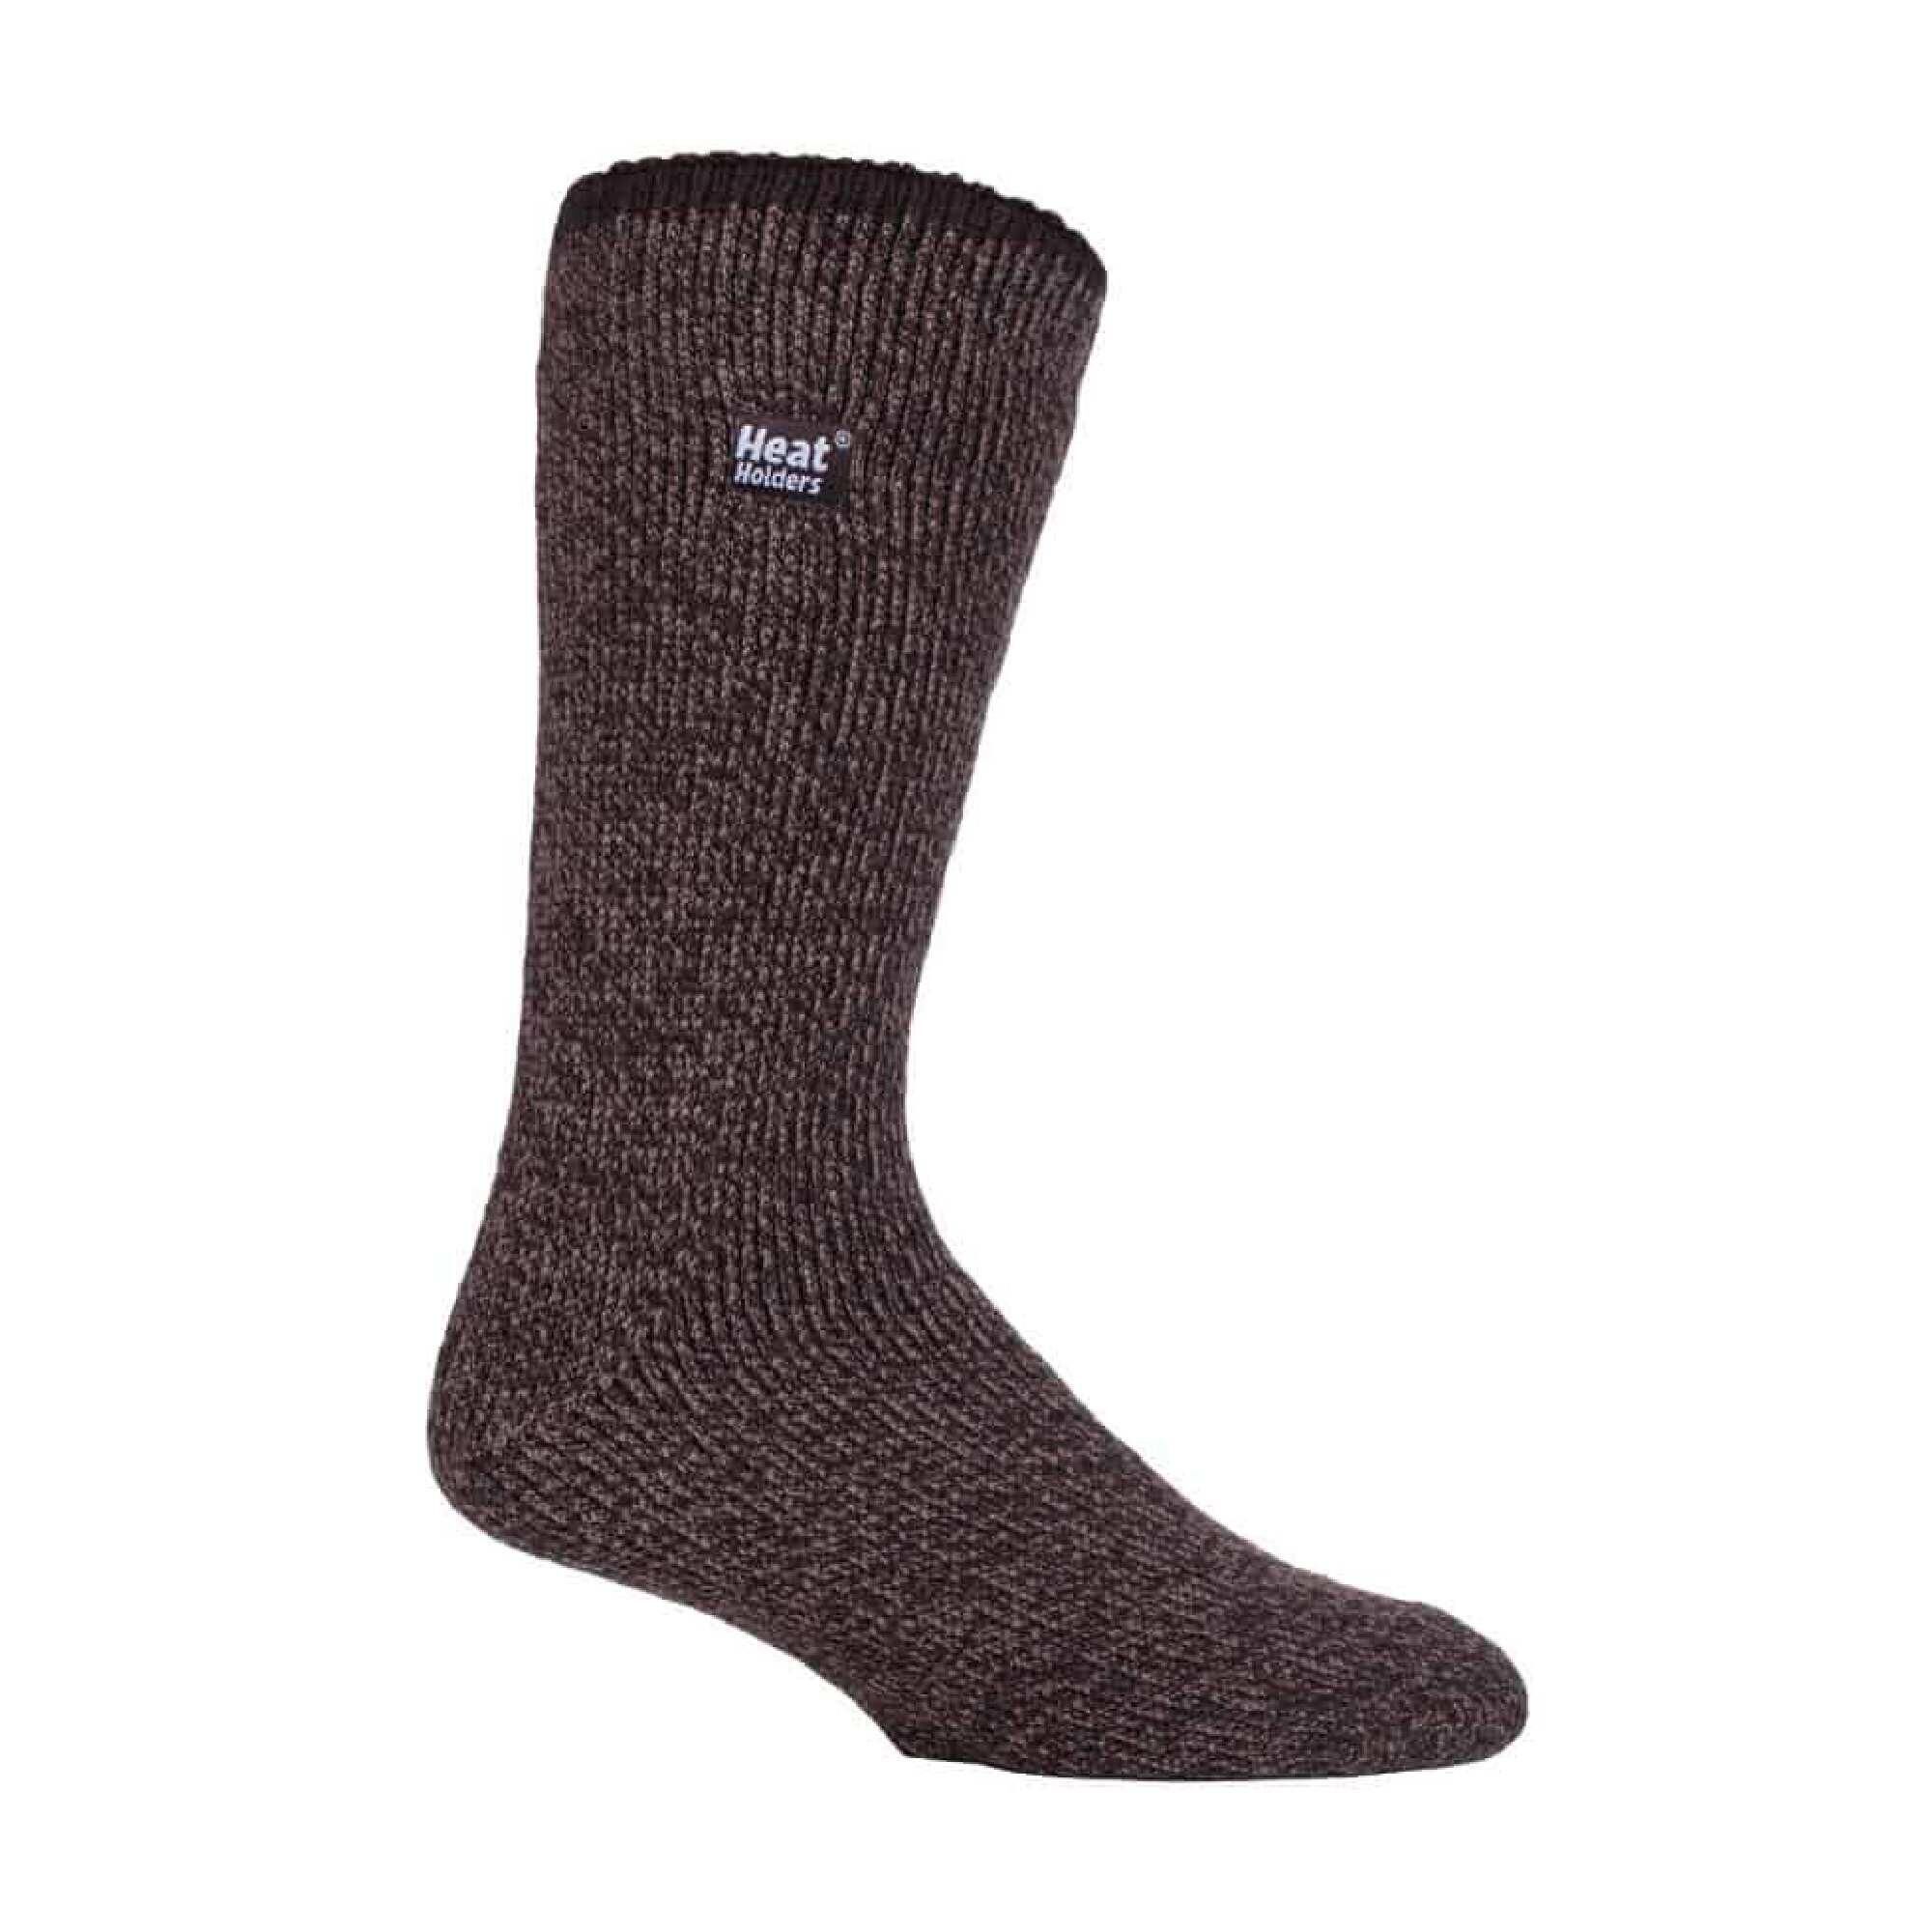 HEAT HOLDERS Mens Winter Merino Wool Thermal Socks with Reinforced Heel and Toe